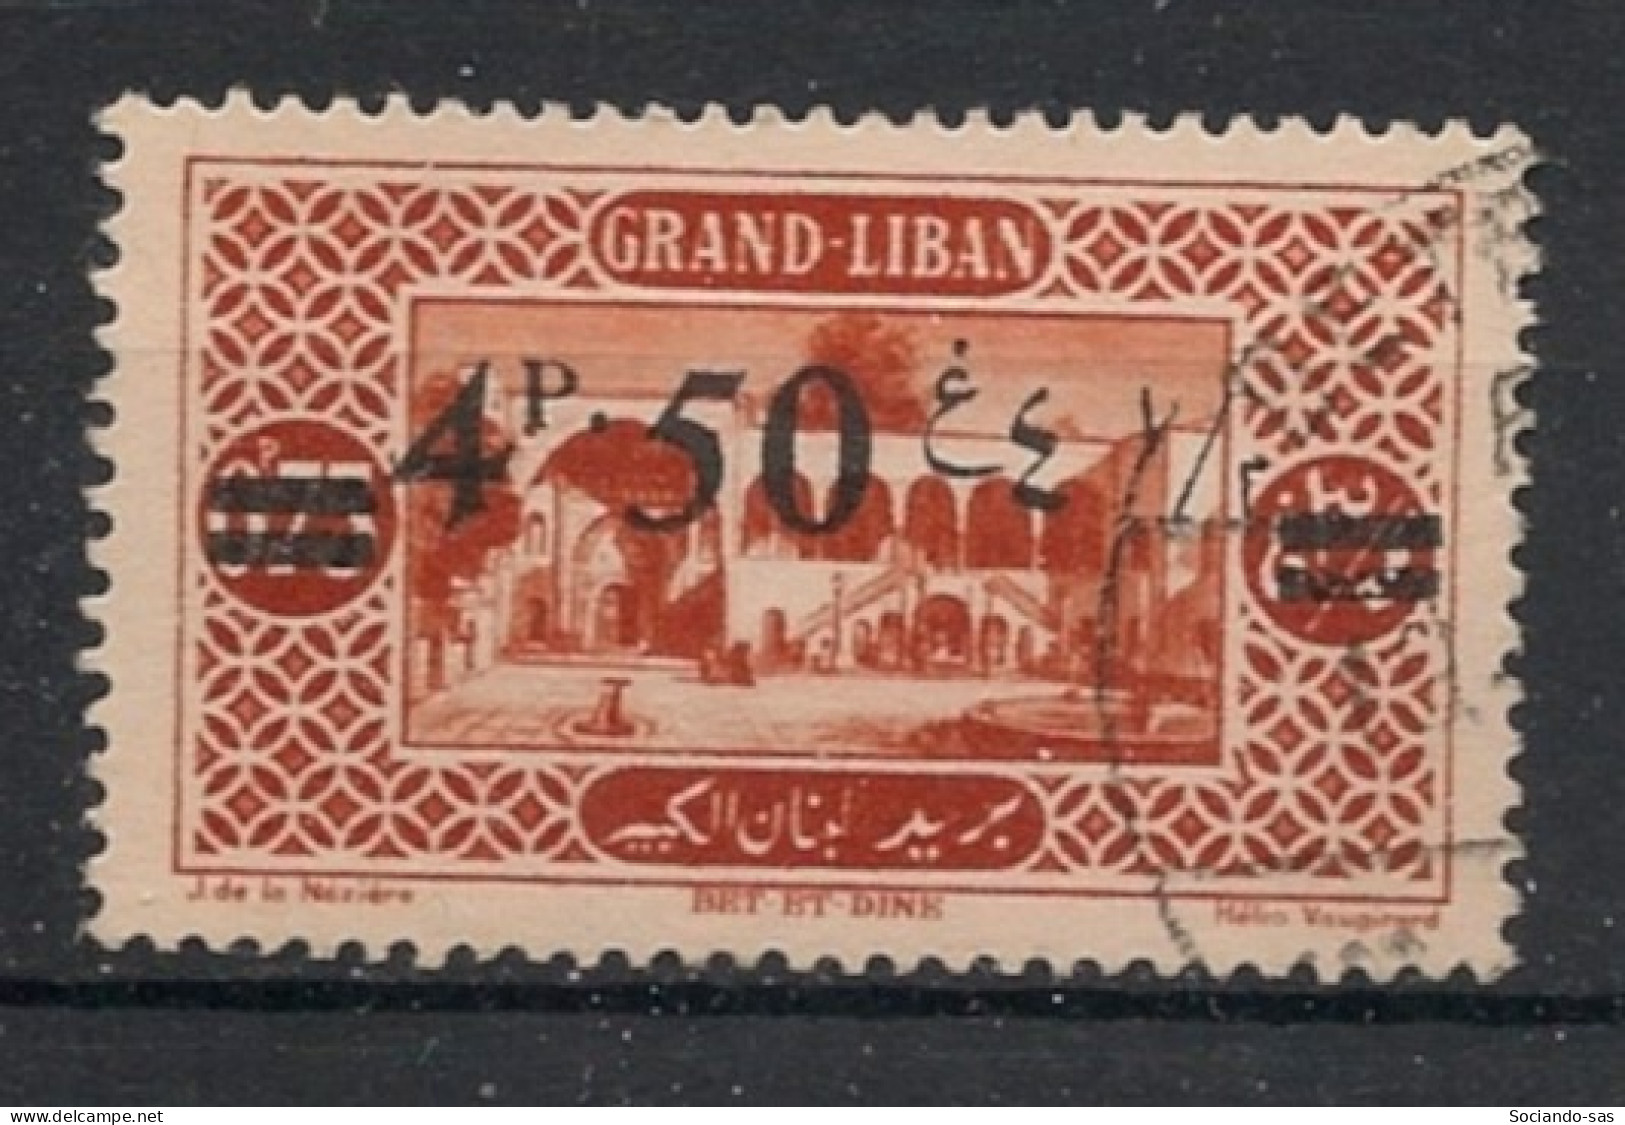 GRAND LIBAN - 1926 - N°YT. 77 - 4pi50 Sur 0pi75 Brun-orange - Oblitéré / Used - Gebraucht